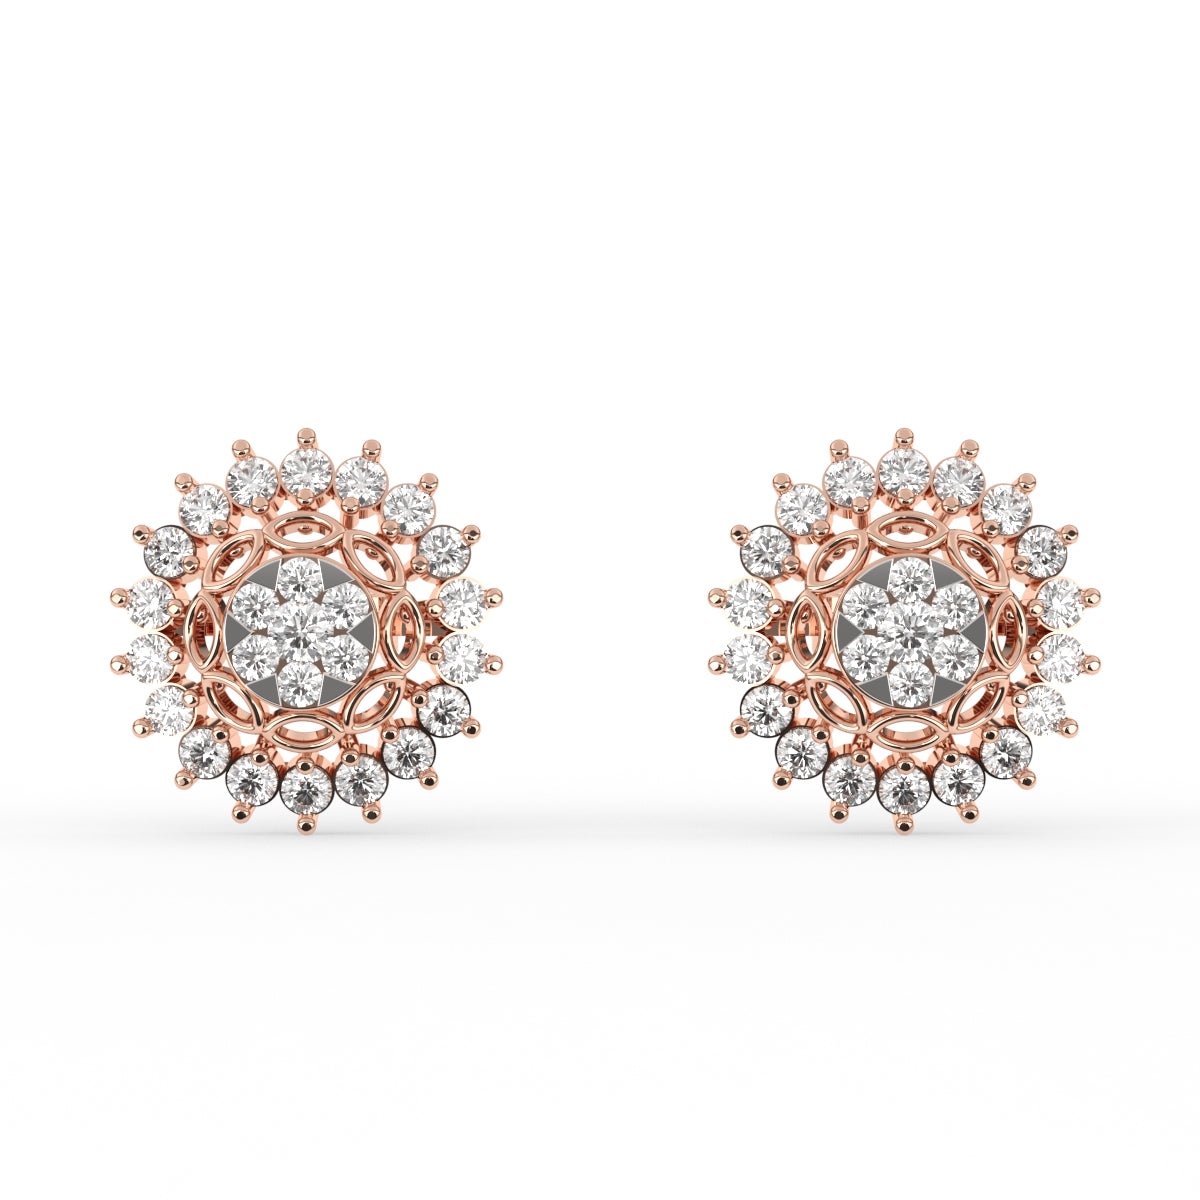 Lavish Floral Diamond Studs Earrings